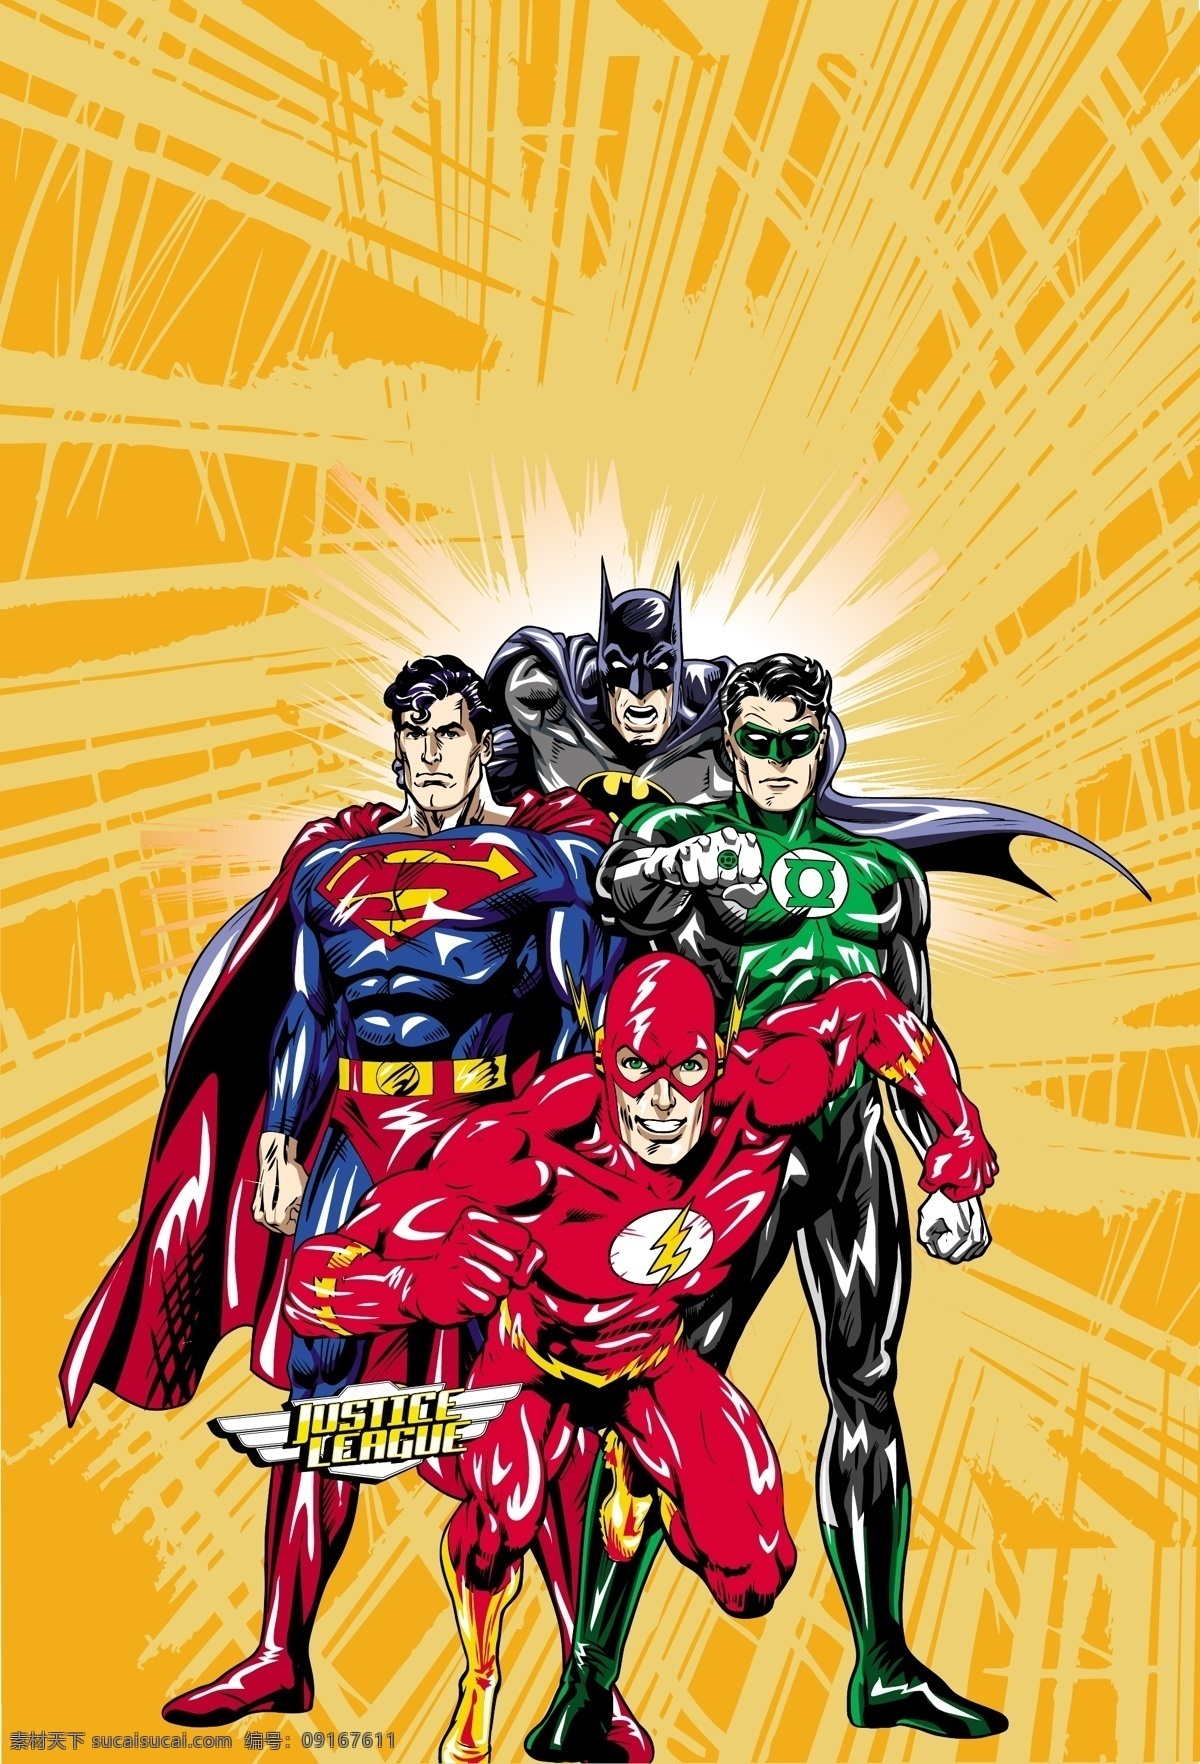 超人英雄 超人 superman 蝙蝠侠 batman 闪电侠 flash 华纳 dc漫画 超级英雄 英雄联盟 卡通形象 其他人物 矢量人物 矢量